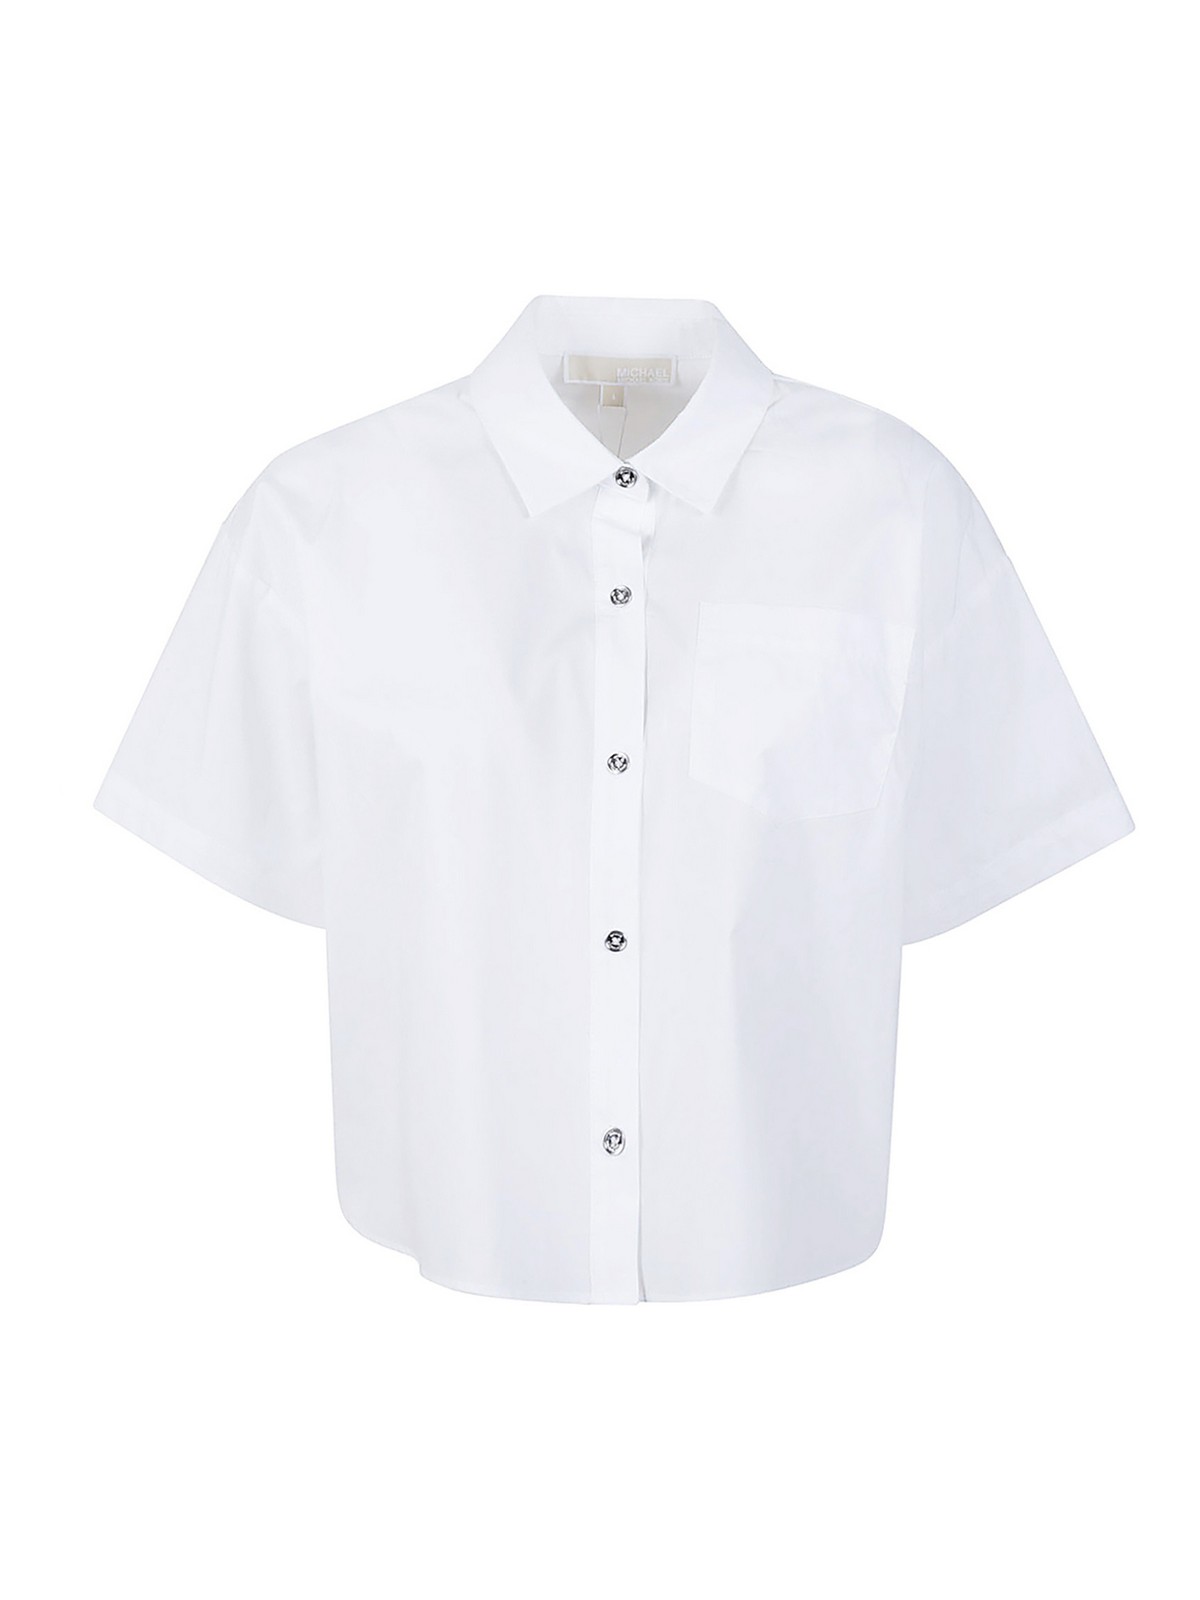 Michael Kors Shirt In White